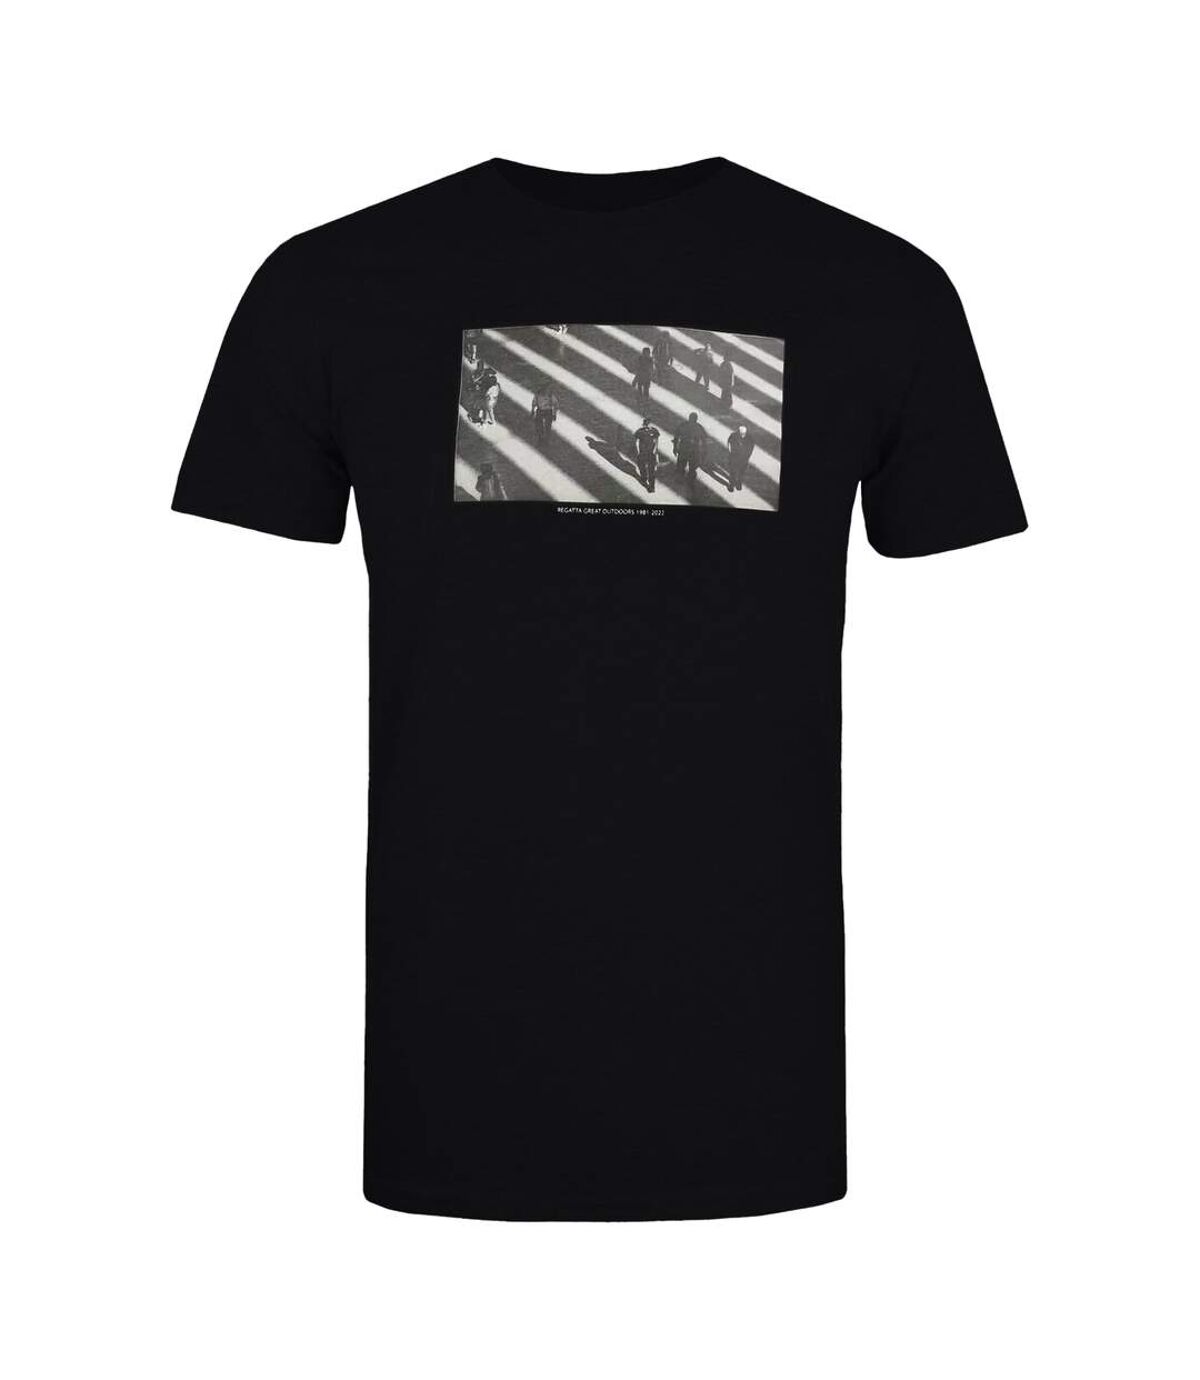 Regatta - T-shirt CLINE - Homme (Noir) - UTRG6663